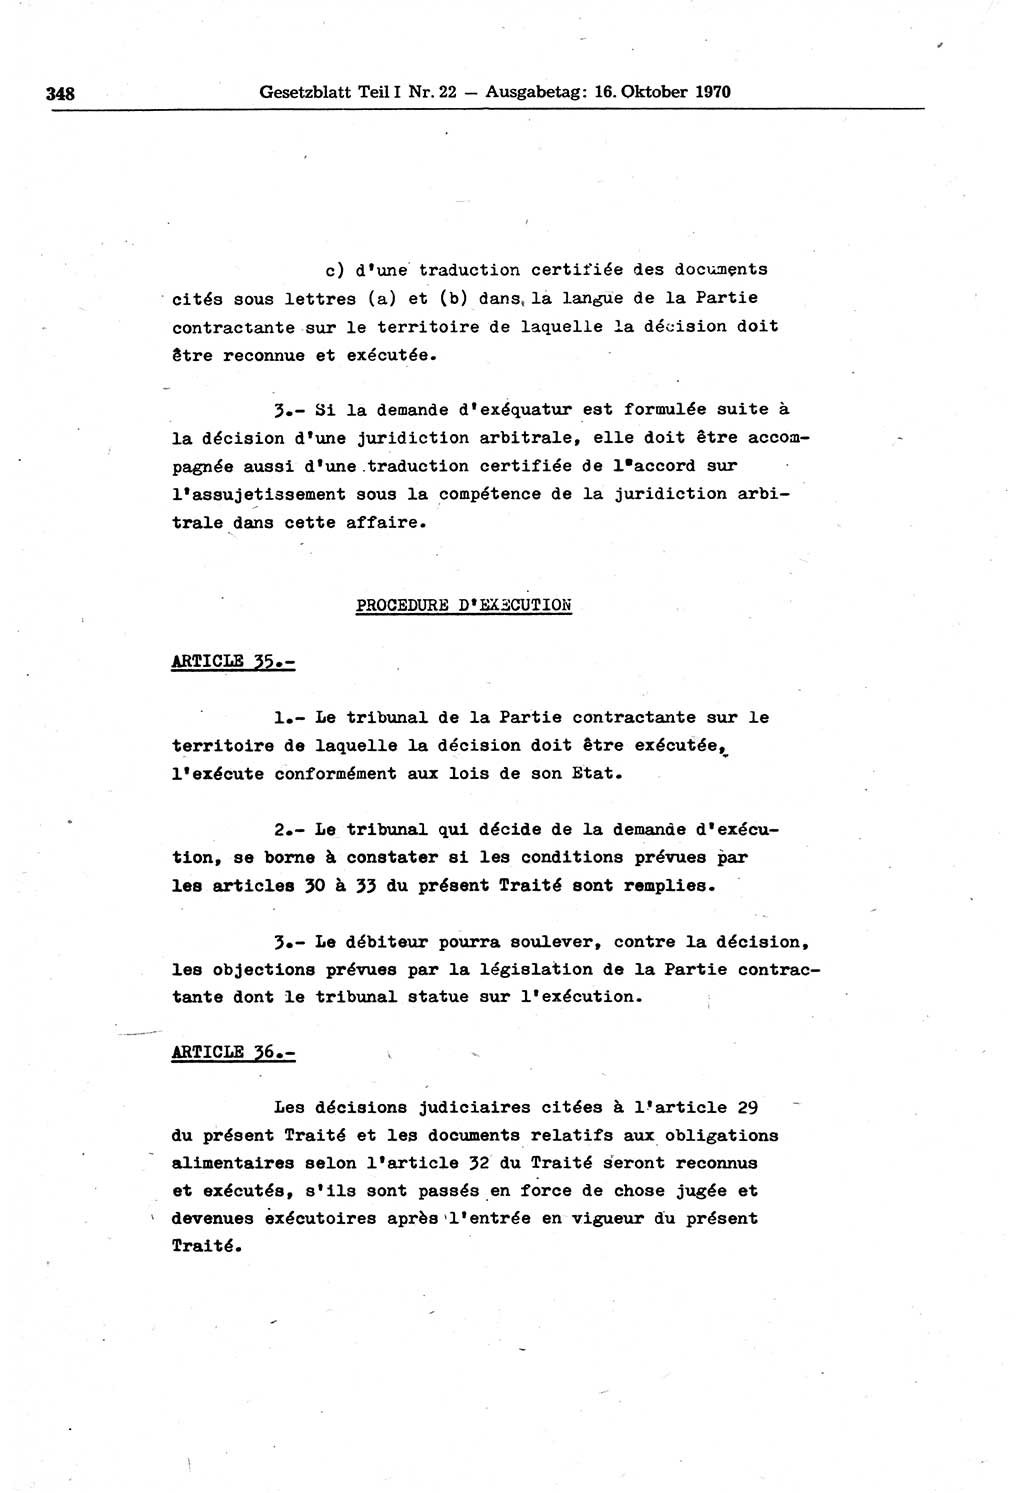 Gesetzblatt (GBl.) der Deutschen Demokratischen Republik (DDR) Teil Ⅰ 1970, Seite 348 (GBl. DDR Ⅰ 1970, S. 348)